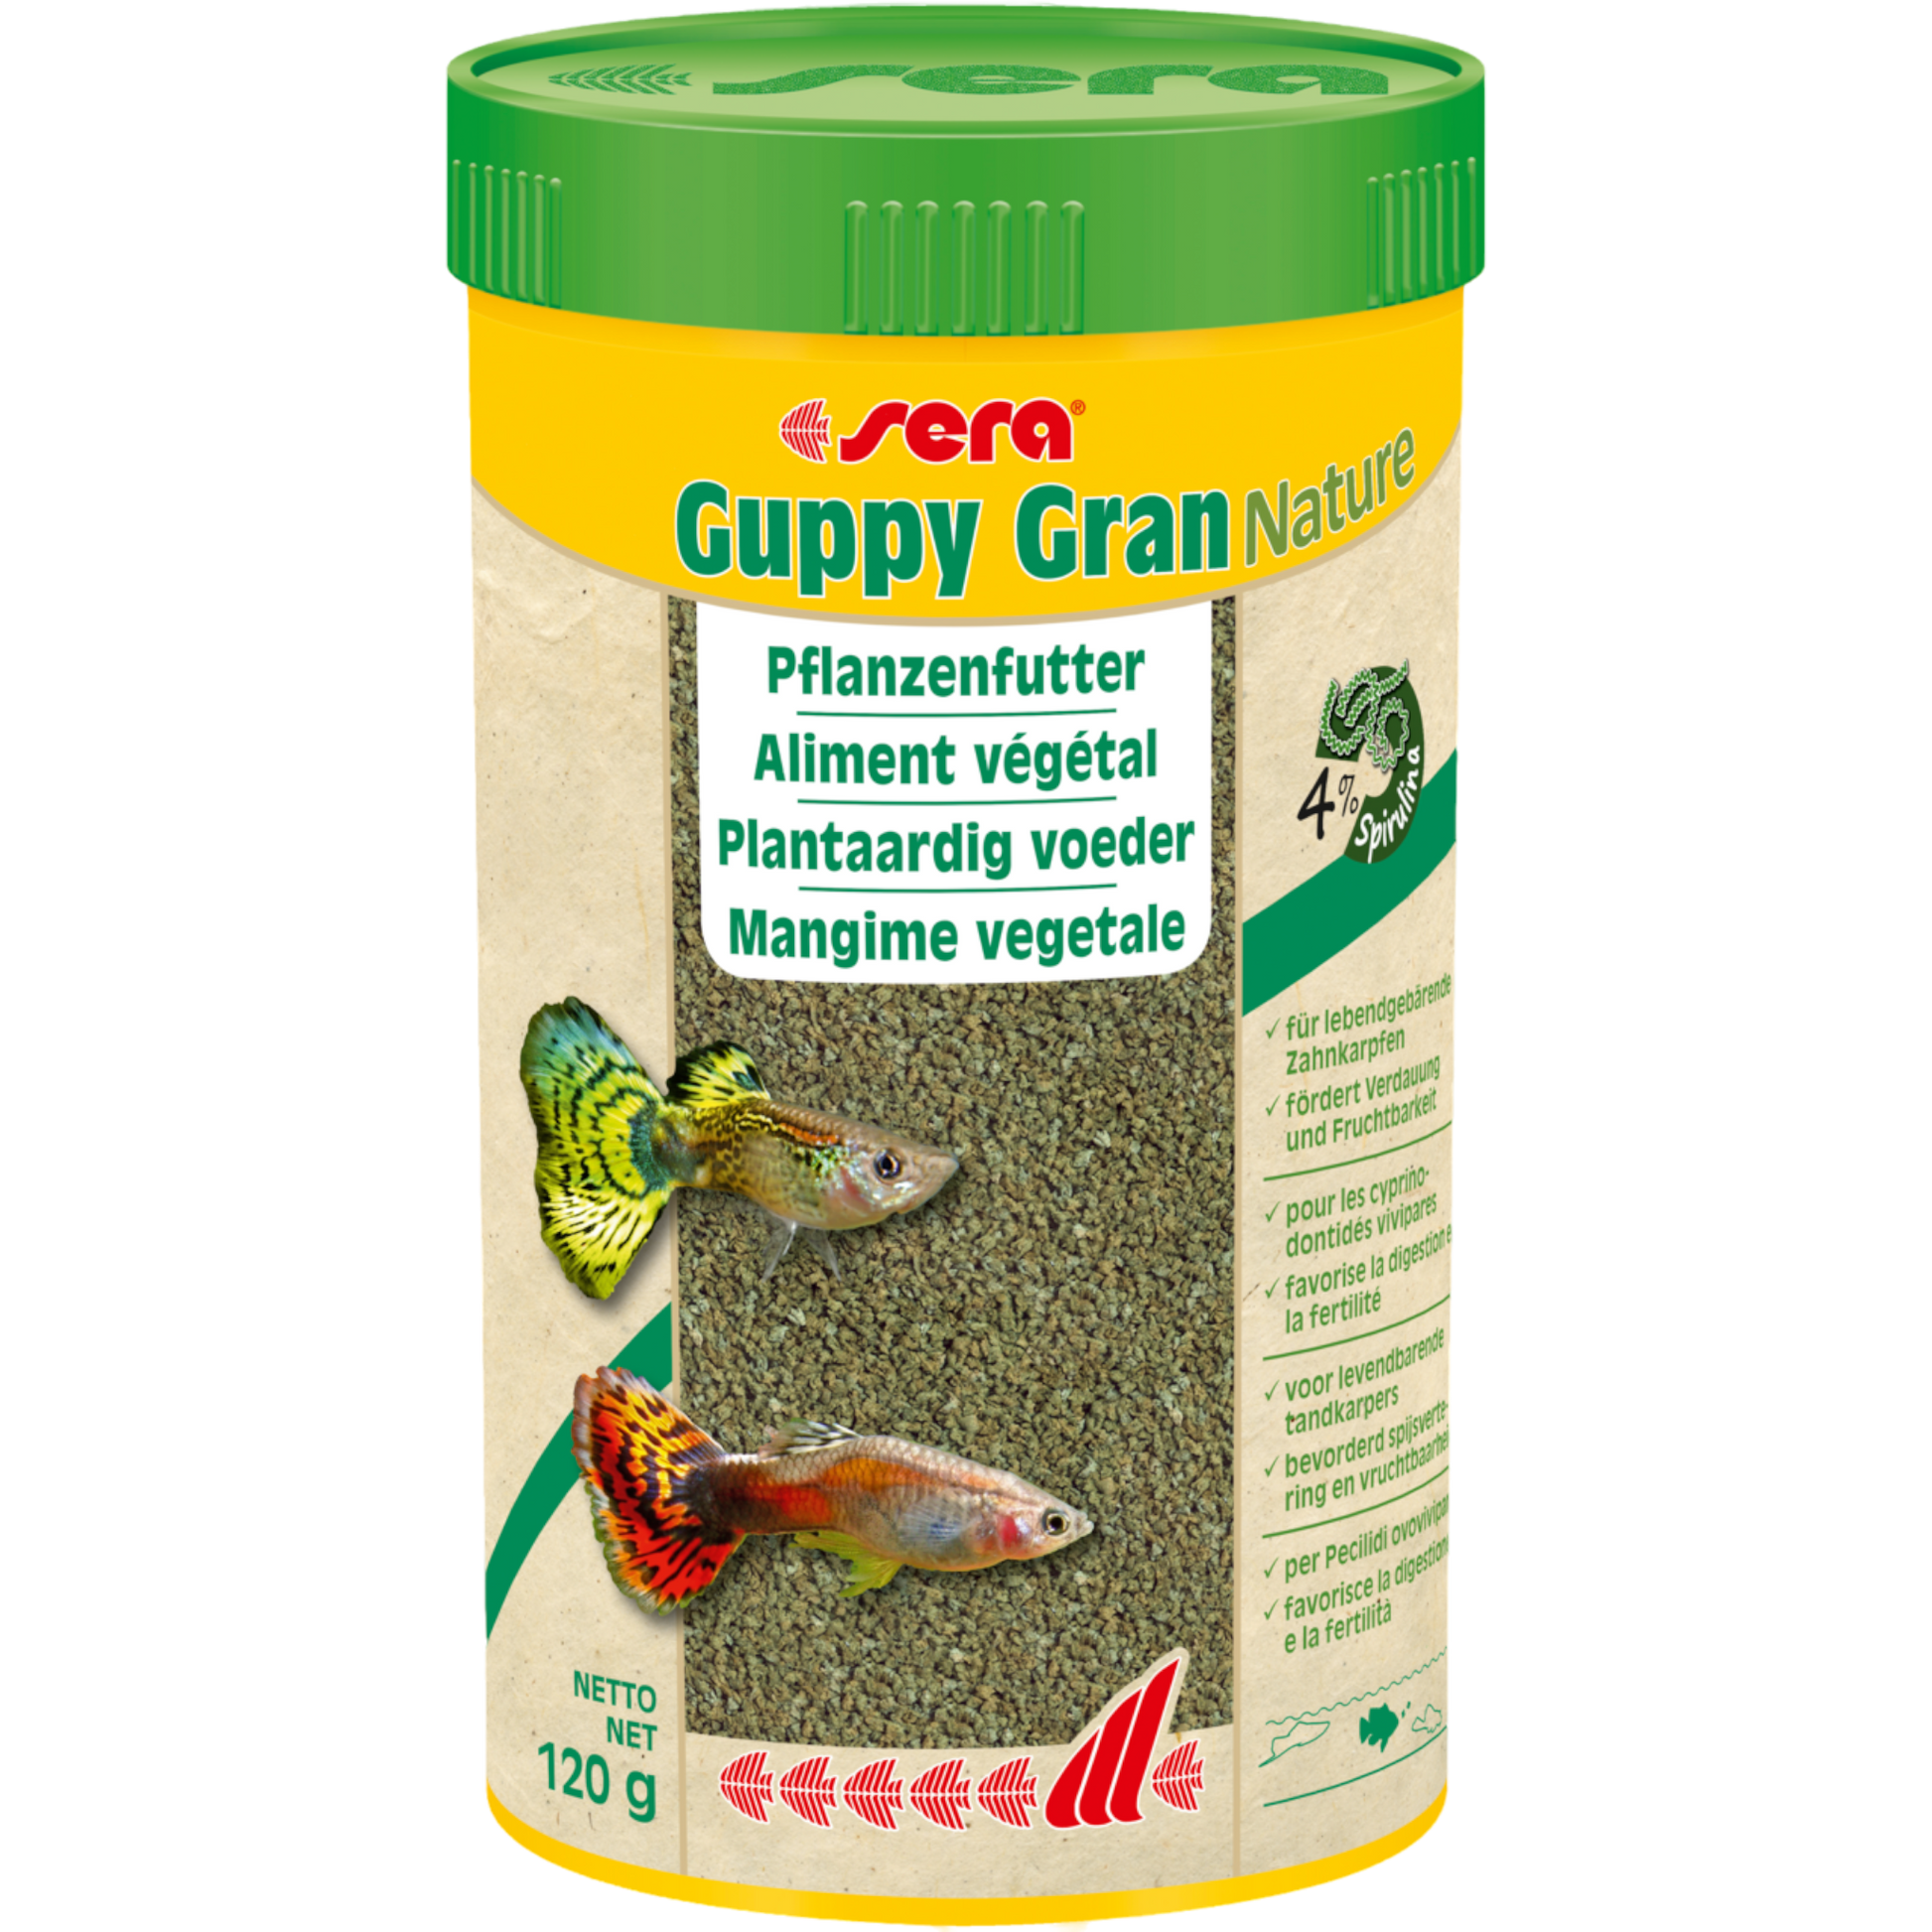 sera Guppy Gran Nature ist das Pflanzenfutter aus schonend hergestelltem Softgranulat ohne Farb- und Konservierungsstoffe für alle vorwiegend herbivoren, in der mittleren Wasserzone fressenden Fische wie z. B. Guppys.